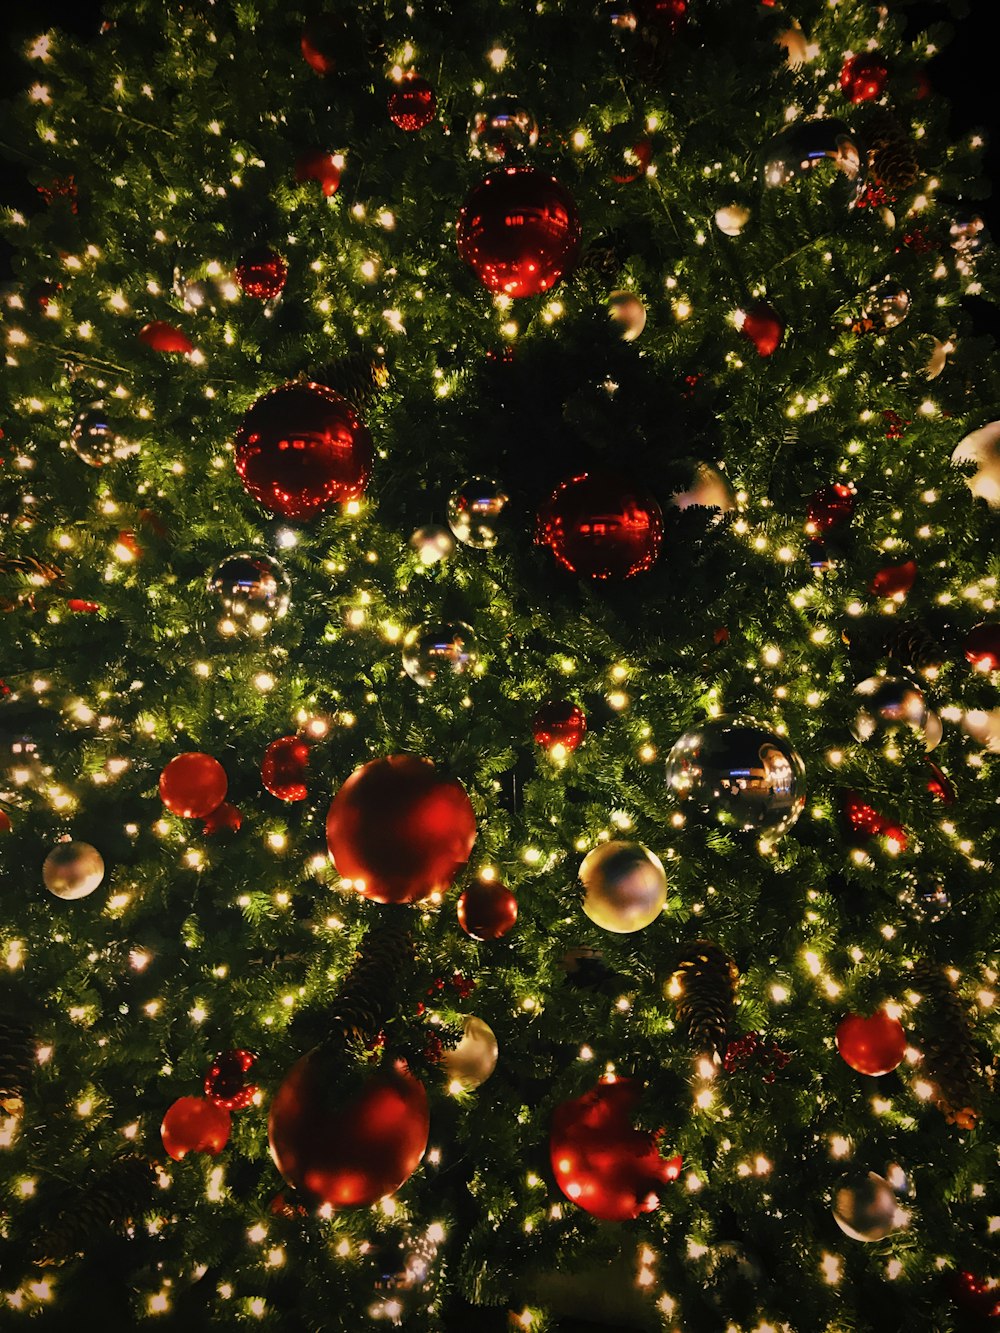 Sehen Sie sich die Fotografie des Weihnachtsbaums mit Kugeln und beleuchteten Lichterketten an